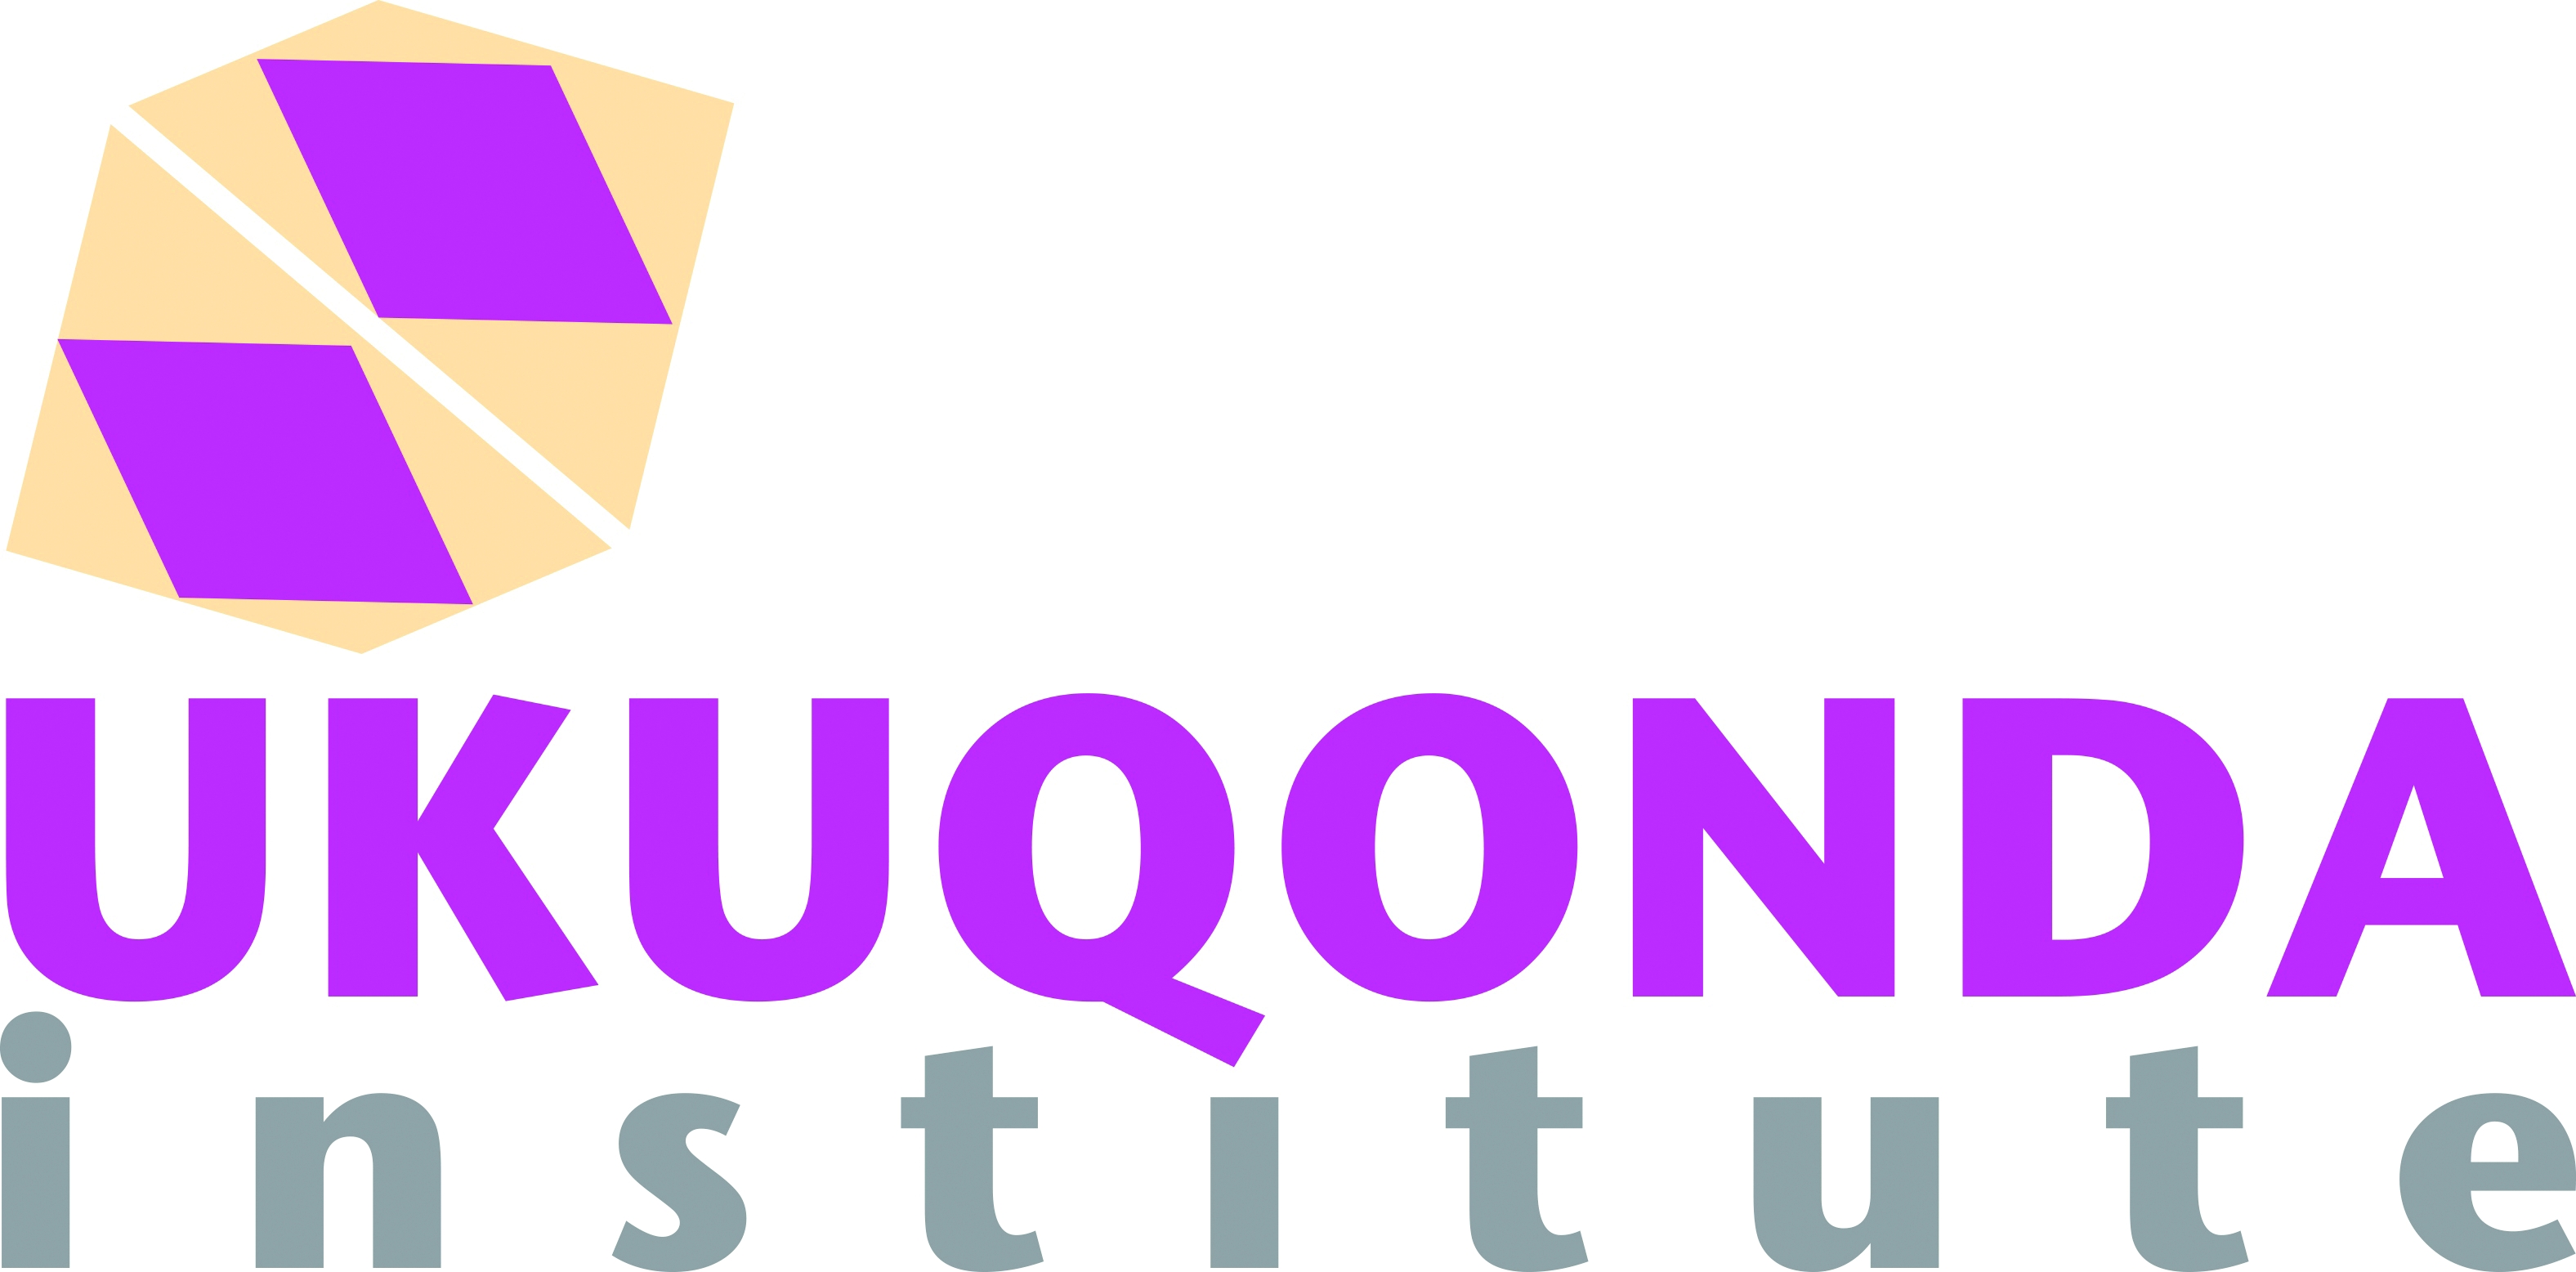 Ukuqonda Institute